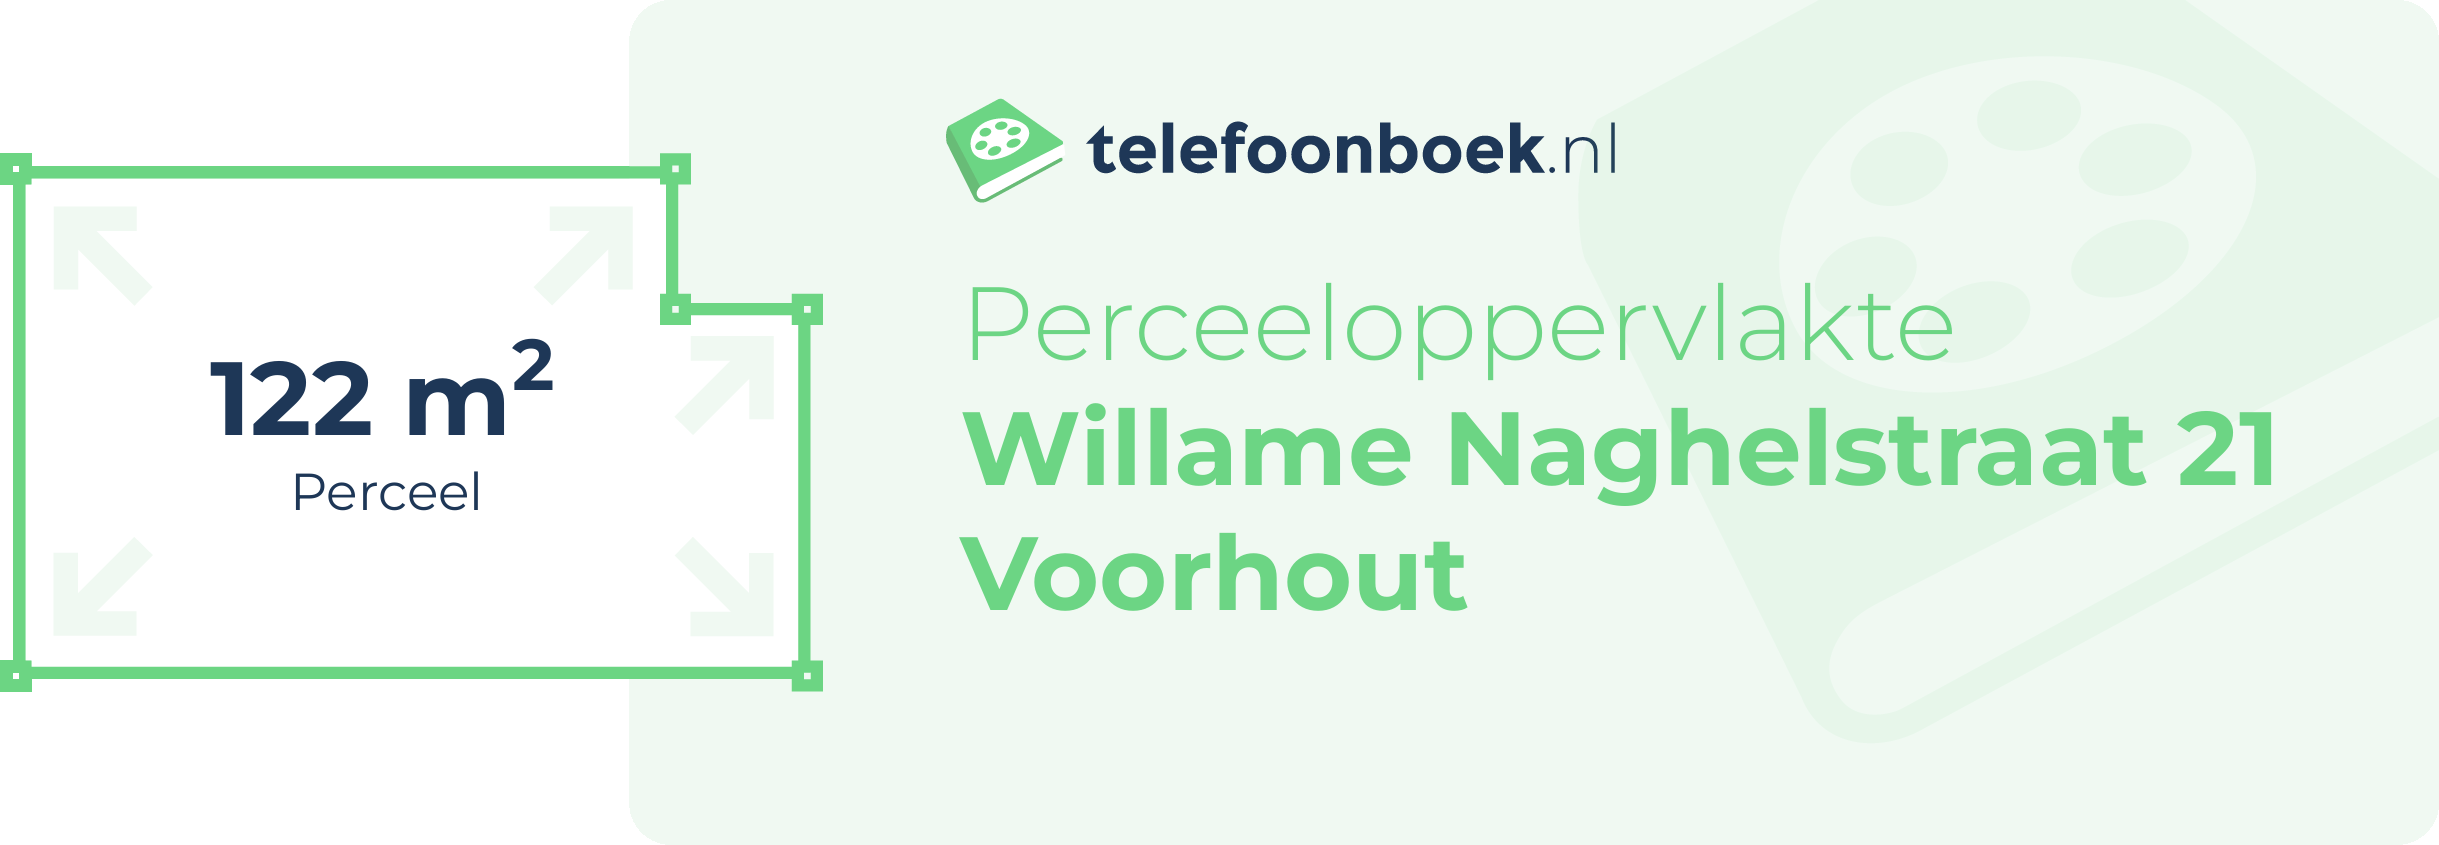 Perceeloppervlakte Willame Naghelstraat 21 Voorhout